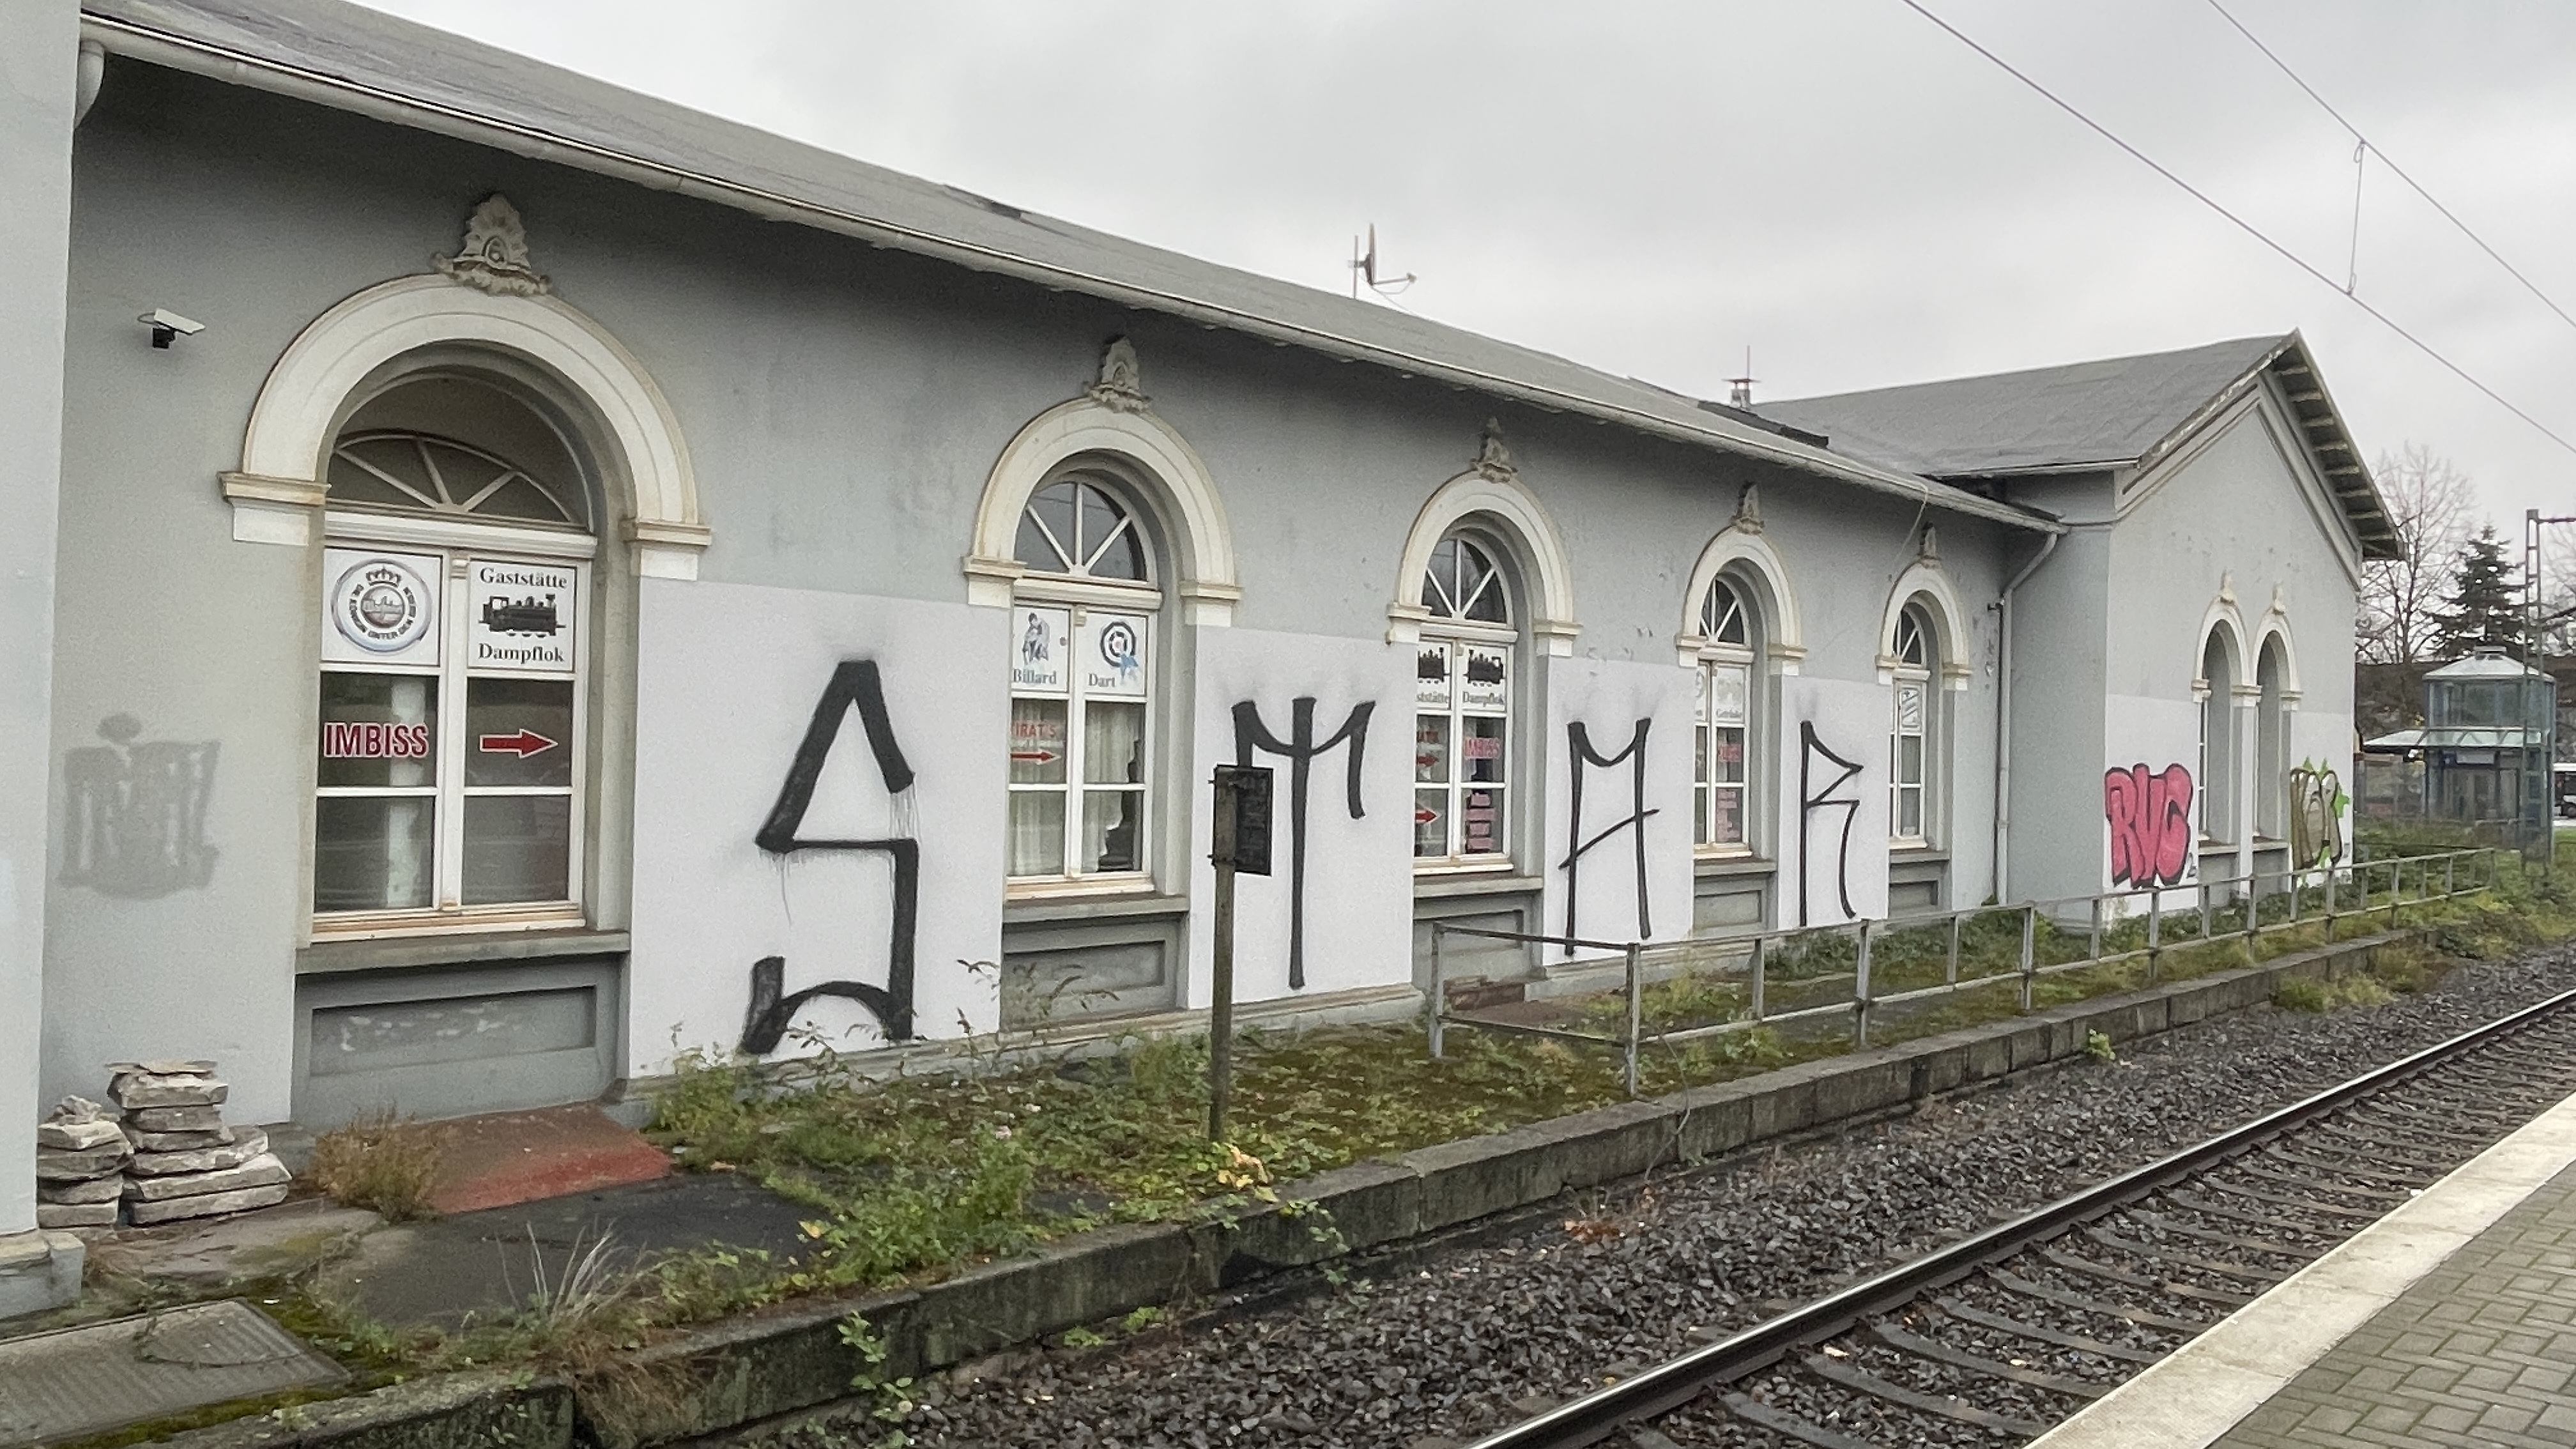 Die Fassade, hier vom Bahnsteig aus, ist in schlechtem Zustand, das Dach scheint undicht und der Putz angegriffen. Die Sanierung muss schnell begonnen werden. | © CDU-Fraktion Ratingen